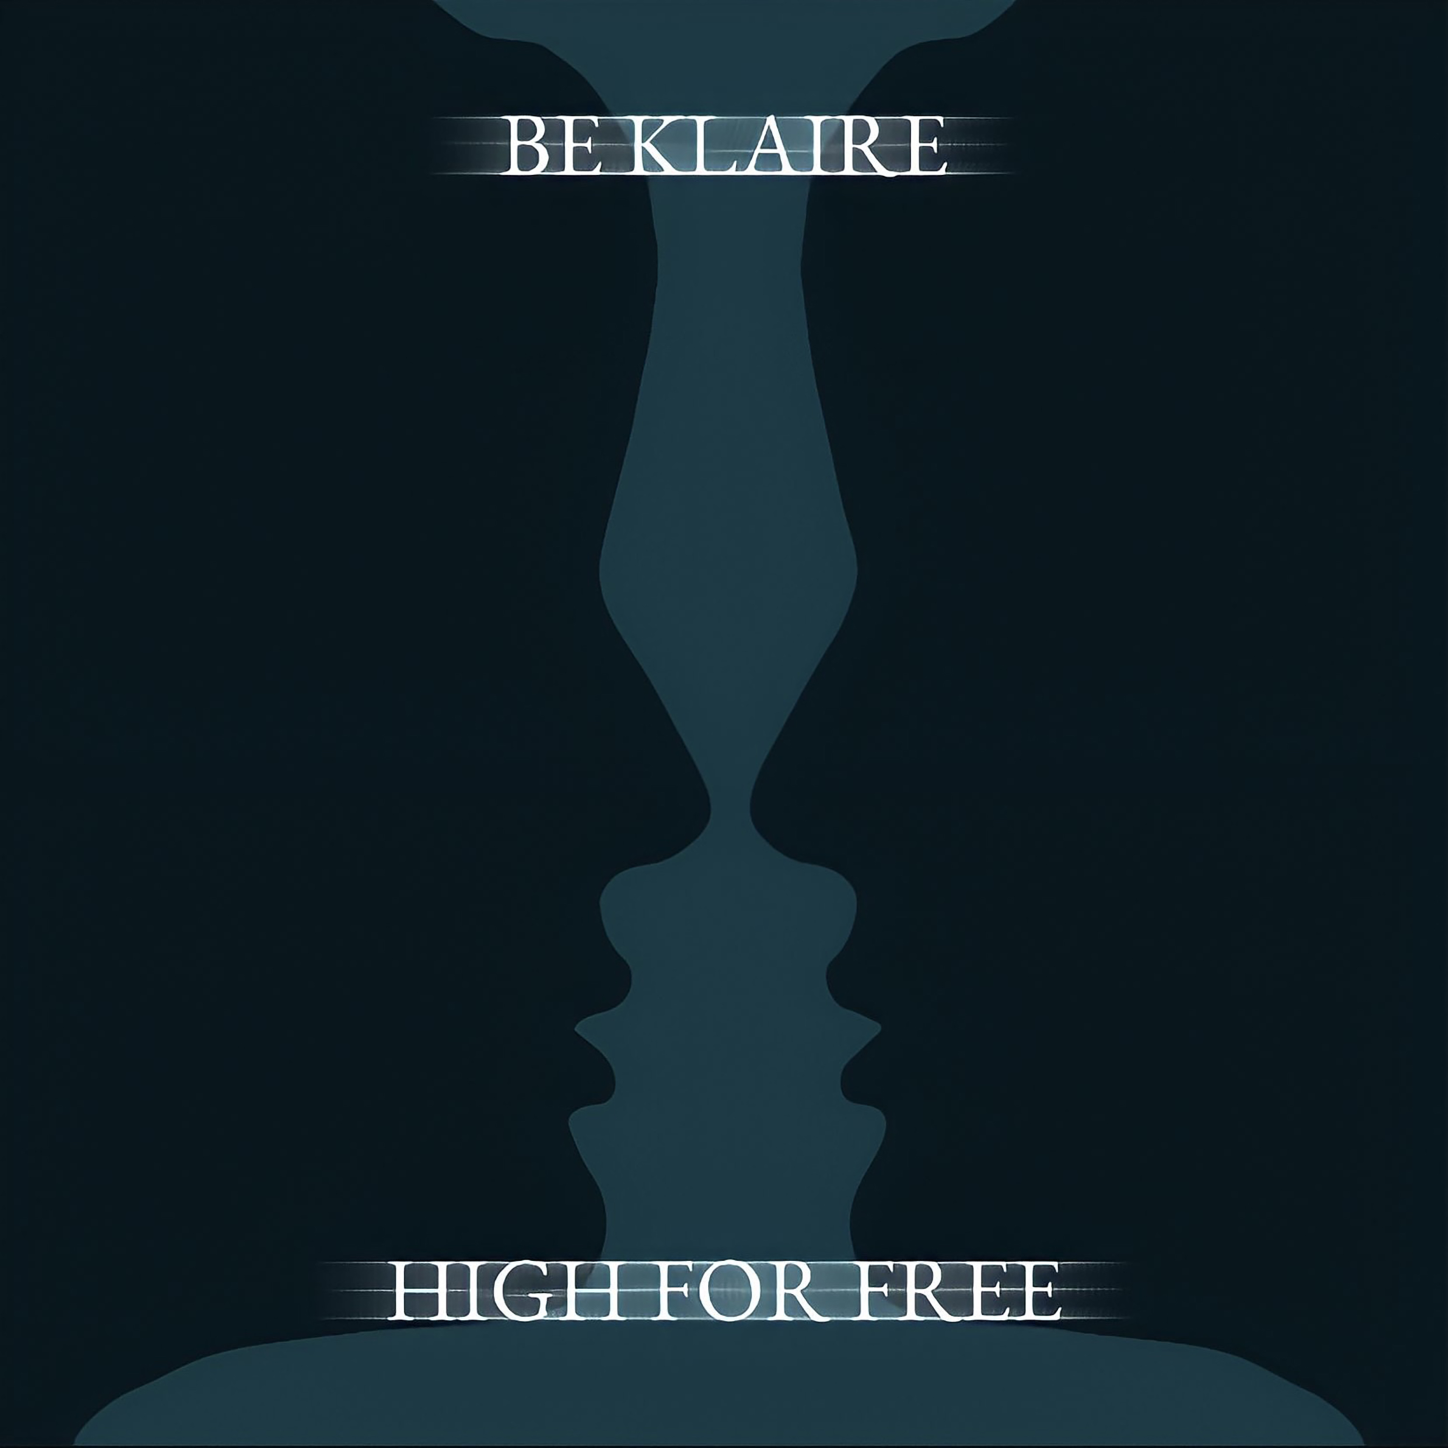 Foto 1 - High For Free - Il nuovo singolo di Be Klaire